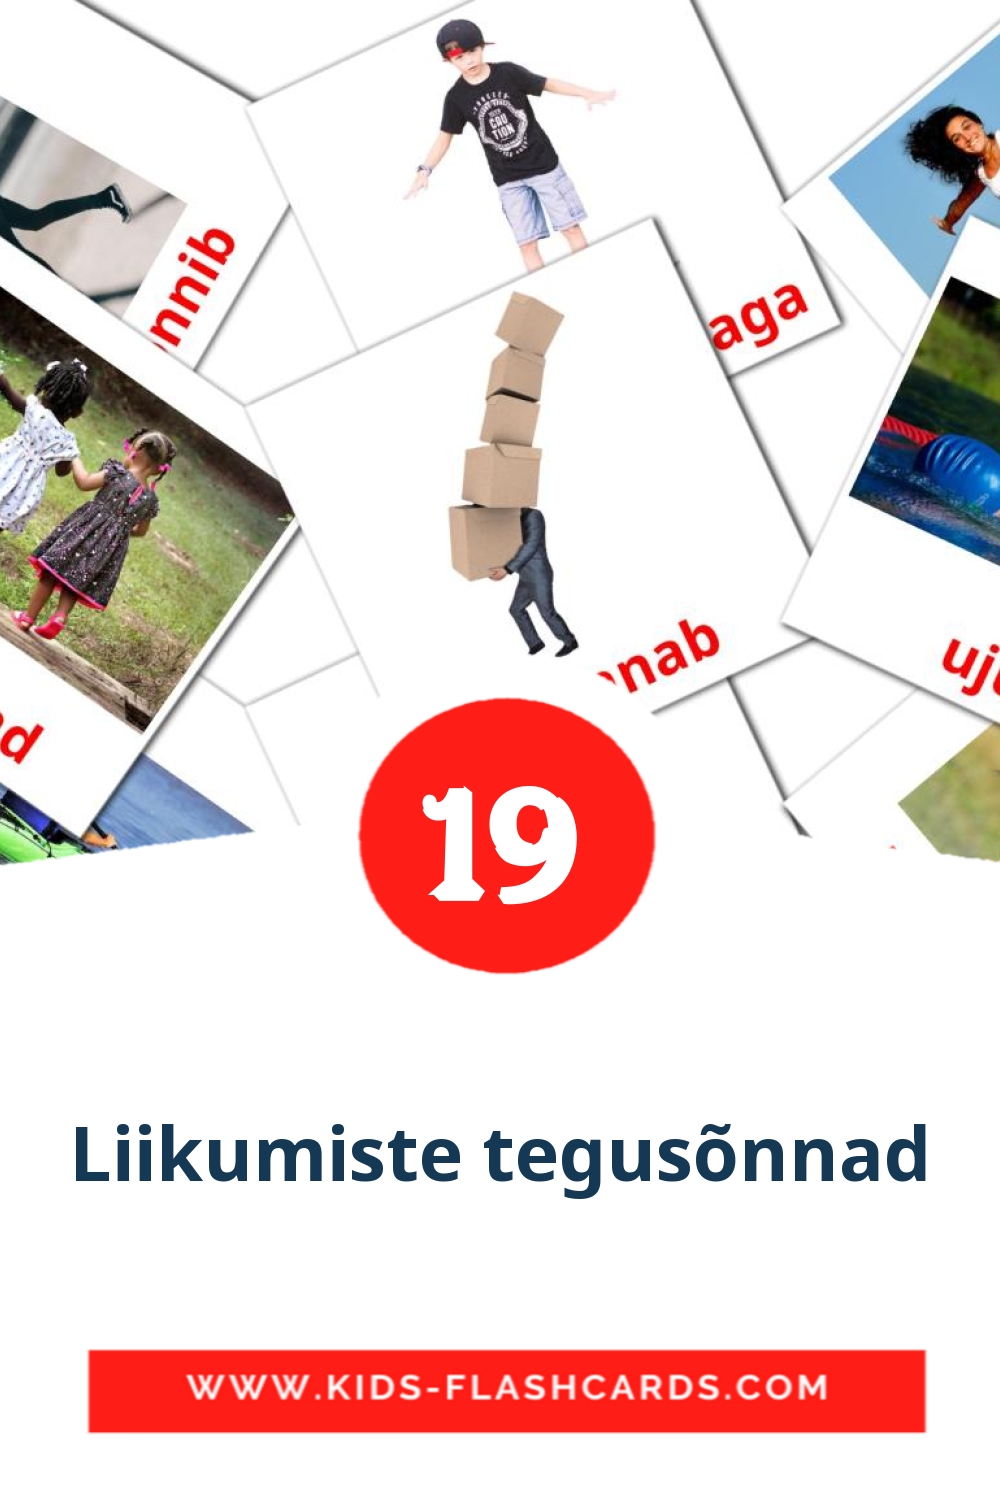 19 Liikumiste tegusõnnad fotokaarten voor kleuters in het estlands